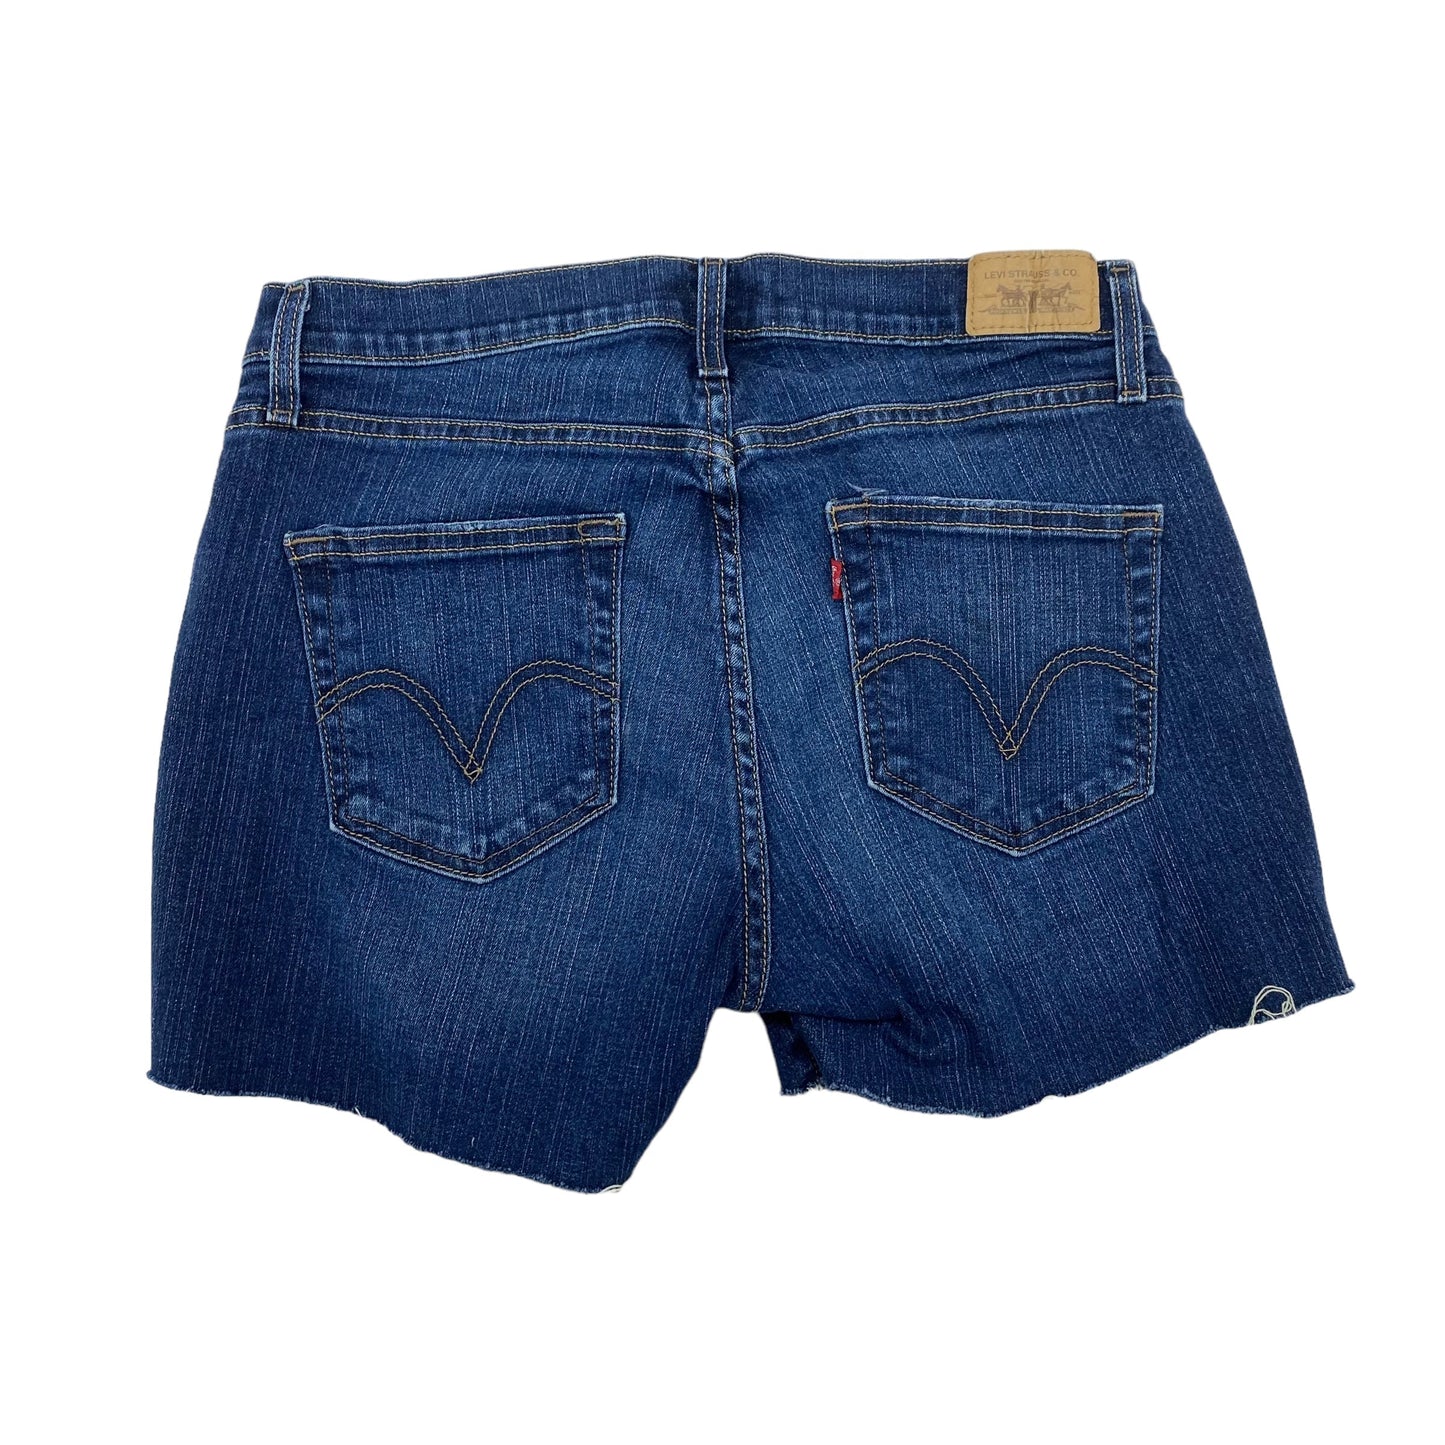 Blue Denim Shorts Levis, Size 12